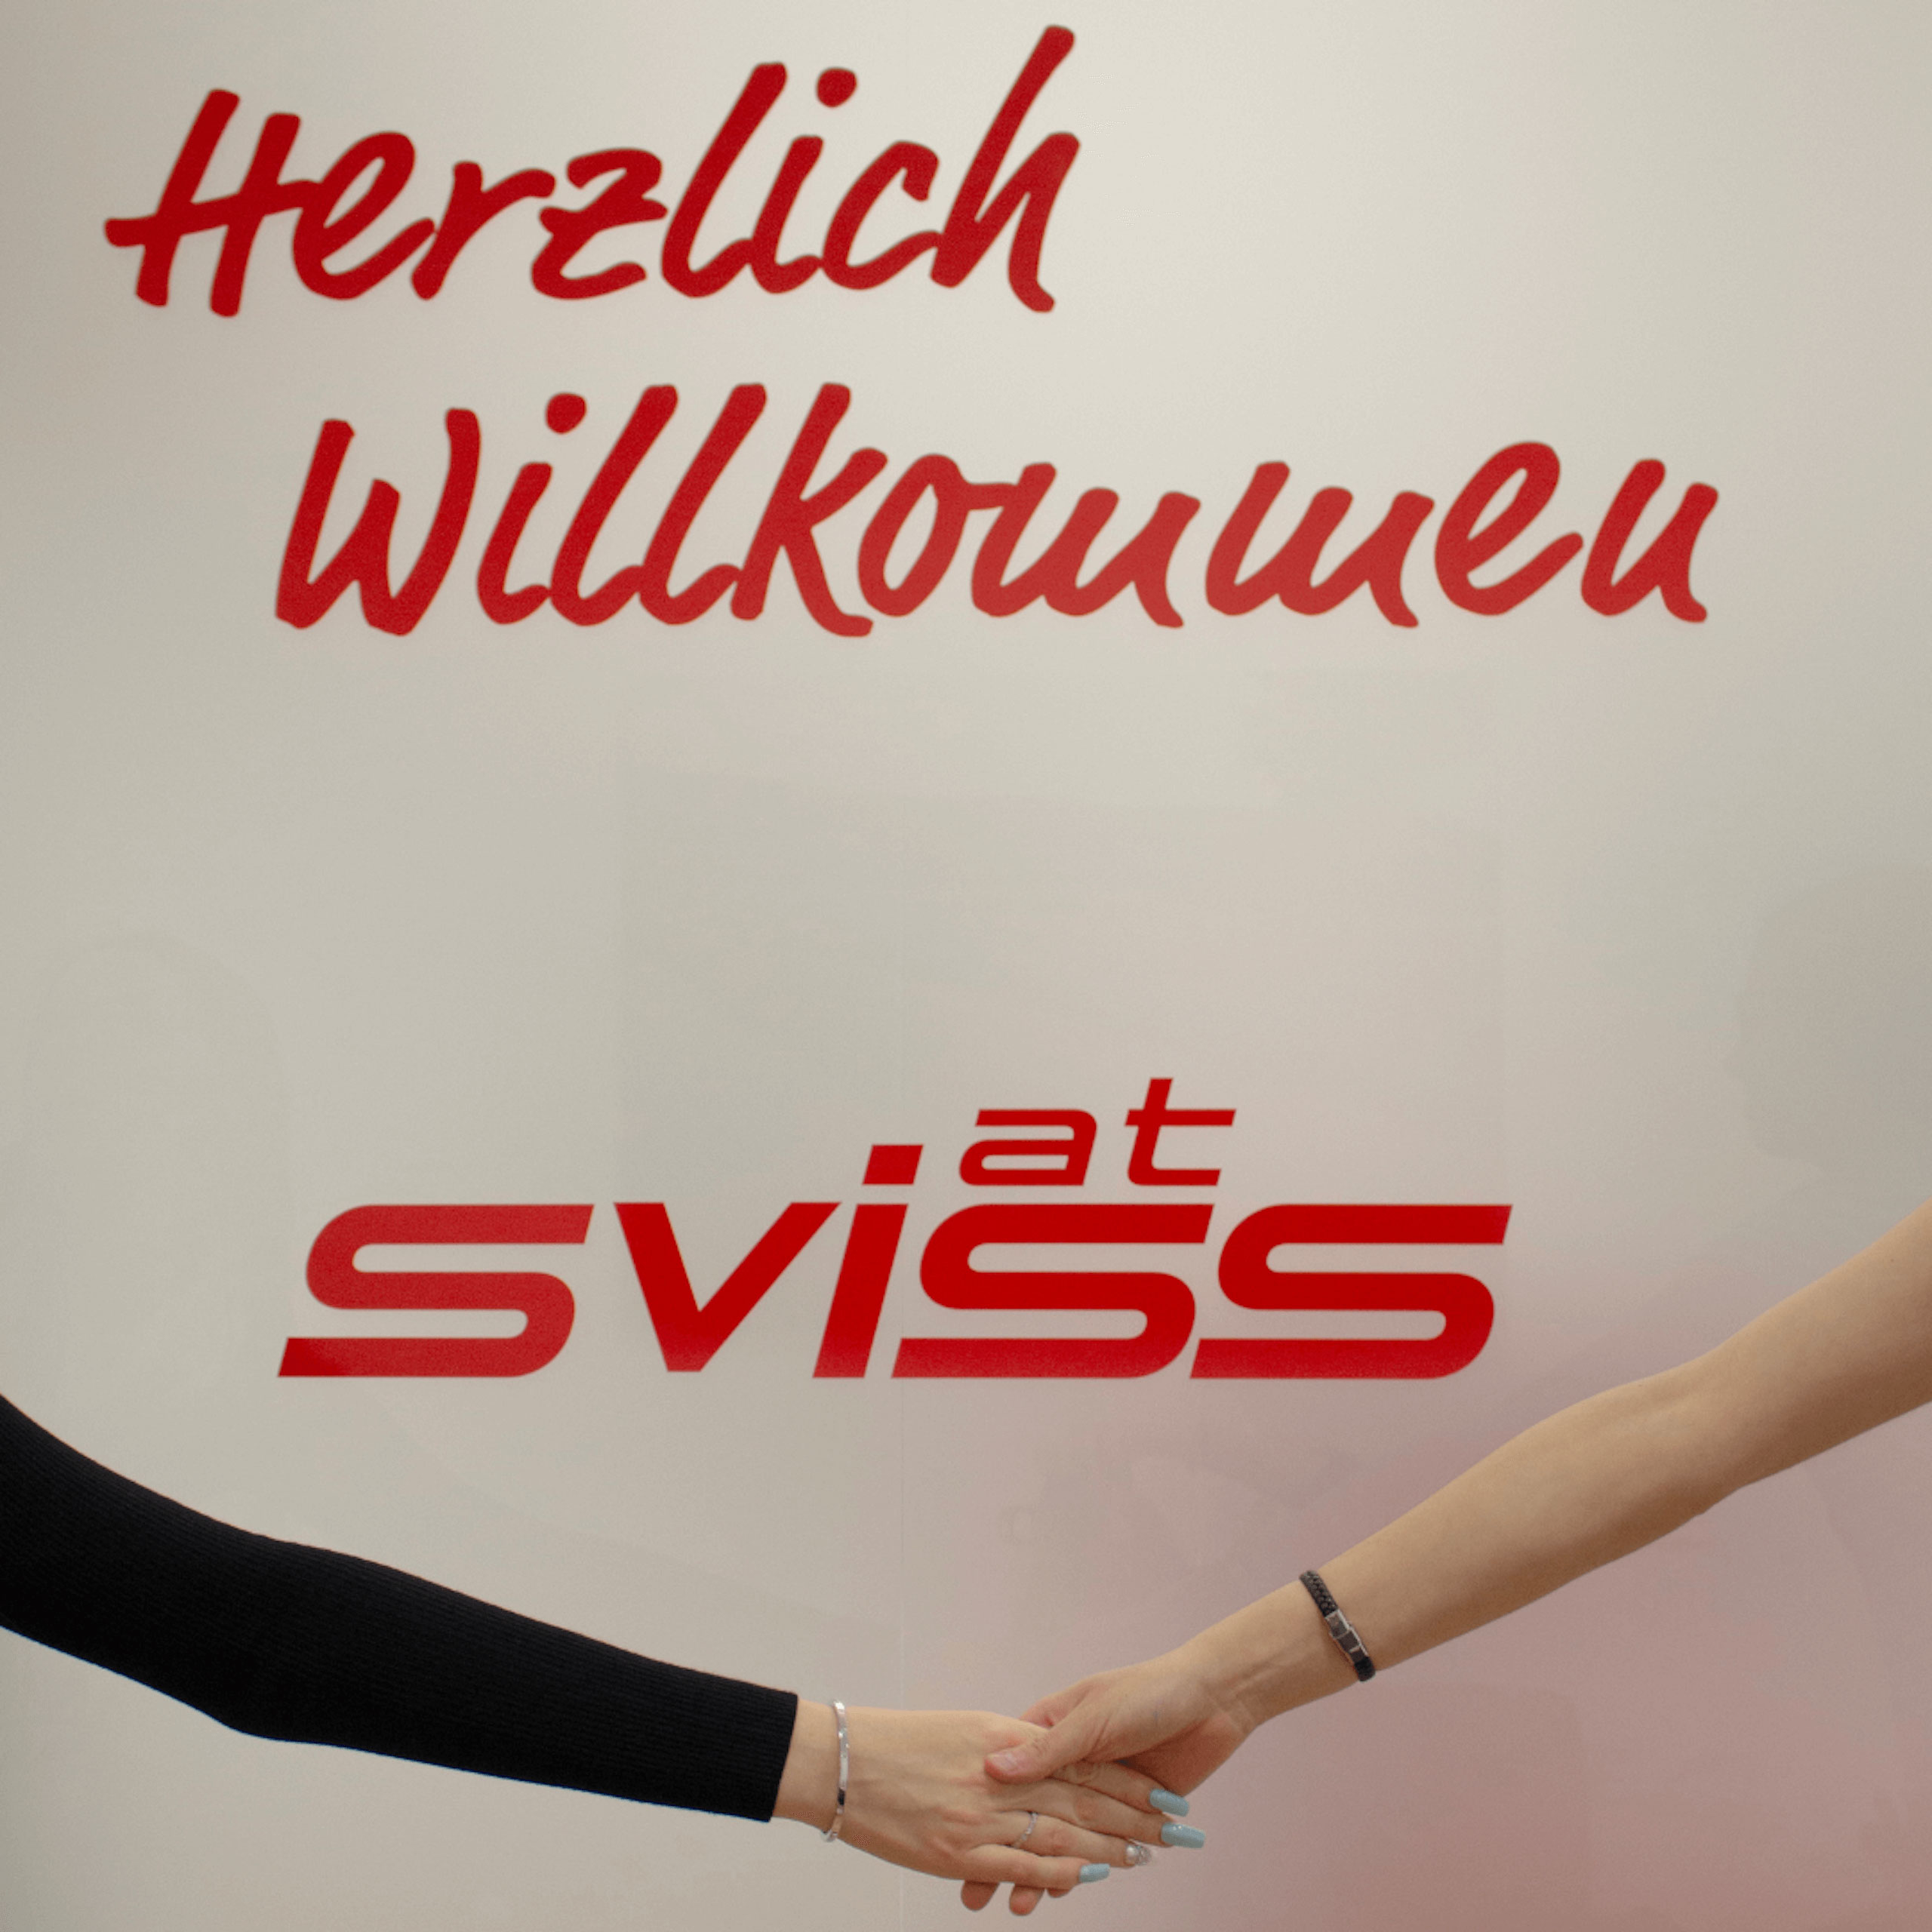 Personen schütteln sich die Hände vor einem Schriftzug "Herzlich Willkommen" und Sviss Logo